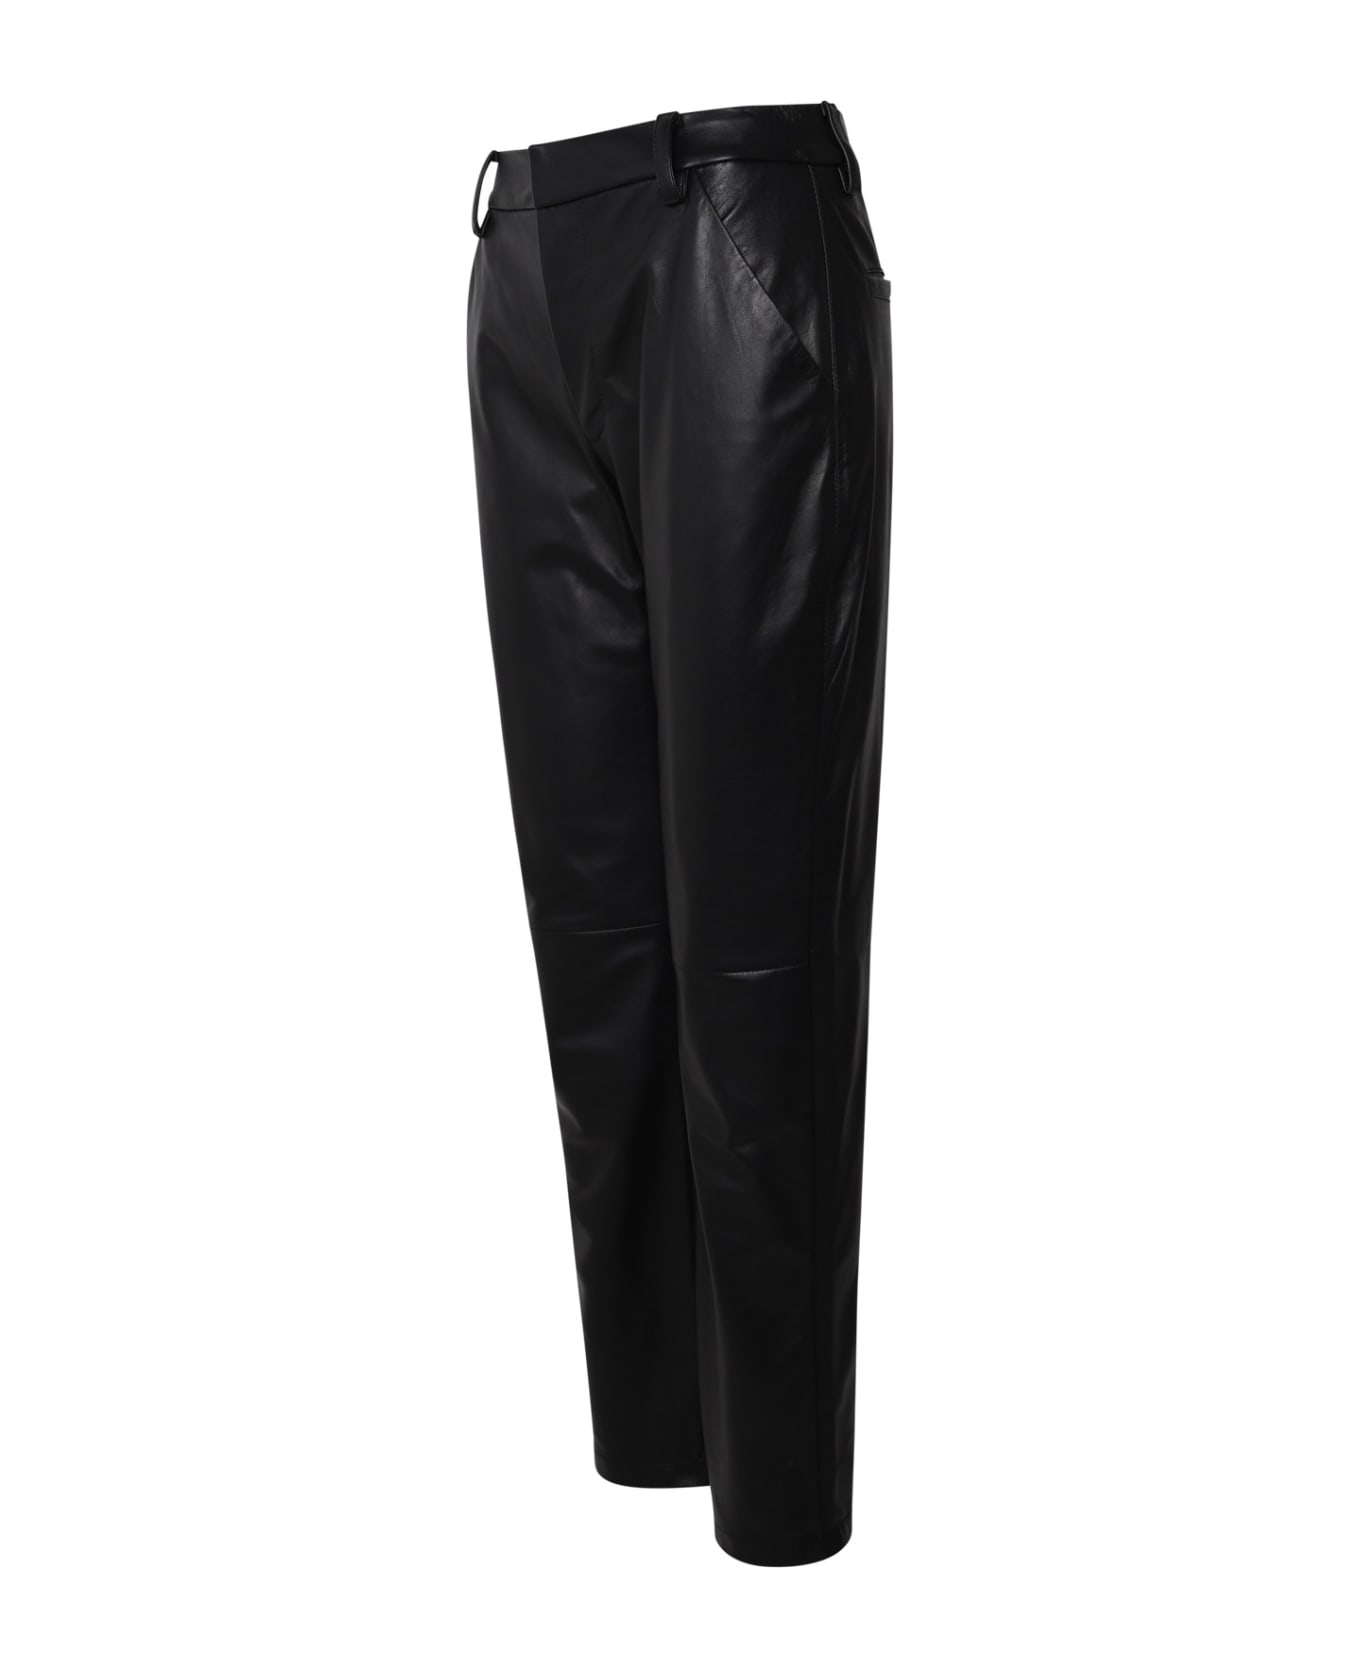 Ferrari Black Leather Pants - Black